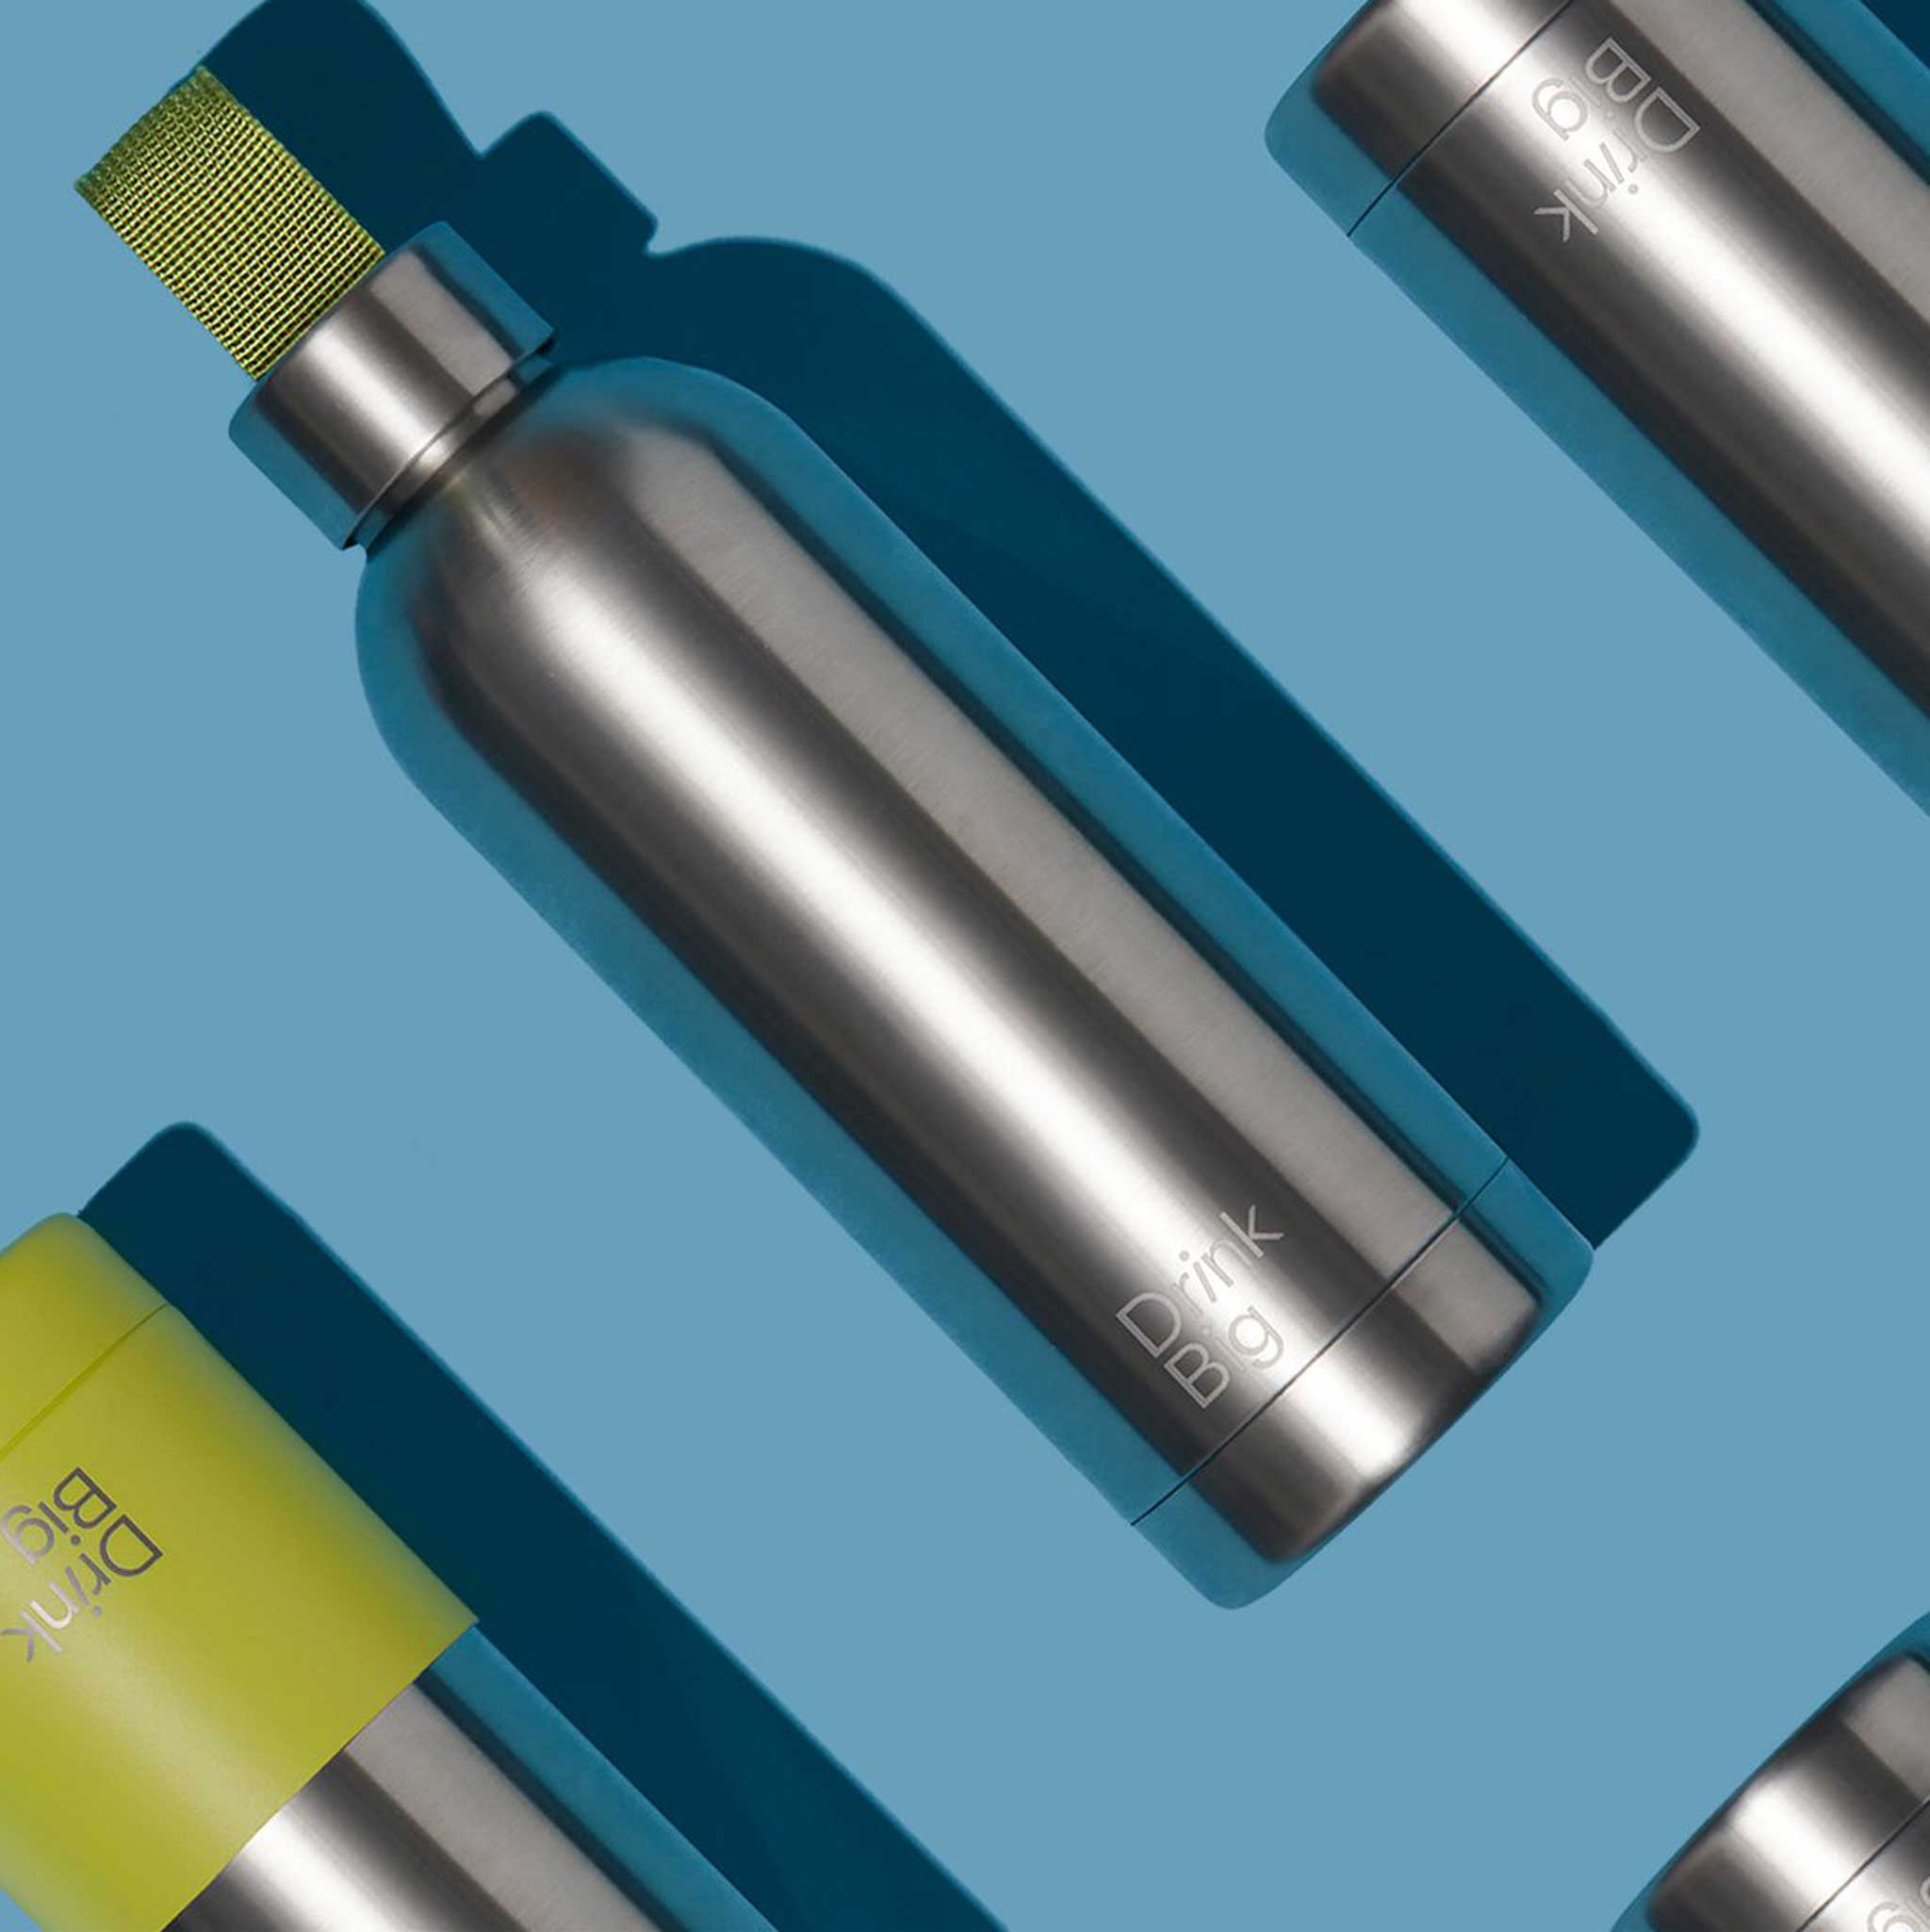 DRINKBIG | Edelstahl TRINKFLASCHE | 500 ml Isolierflasche f. Kohlensäure geeignet | BPA- & rostfrei - Charles & Marie